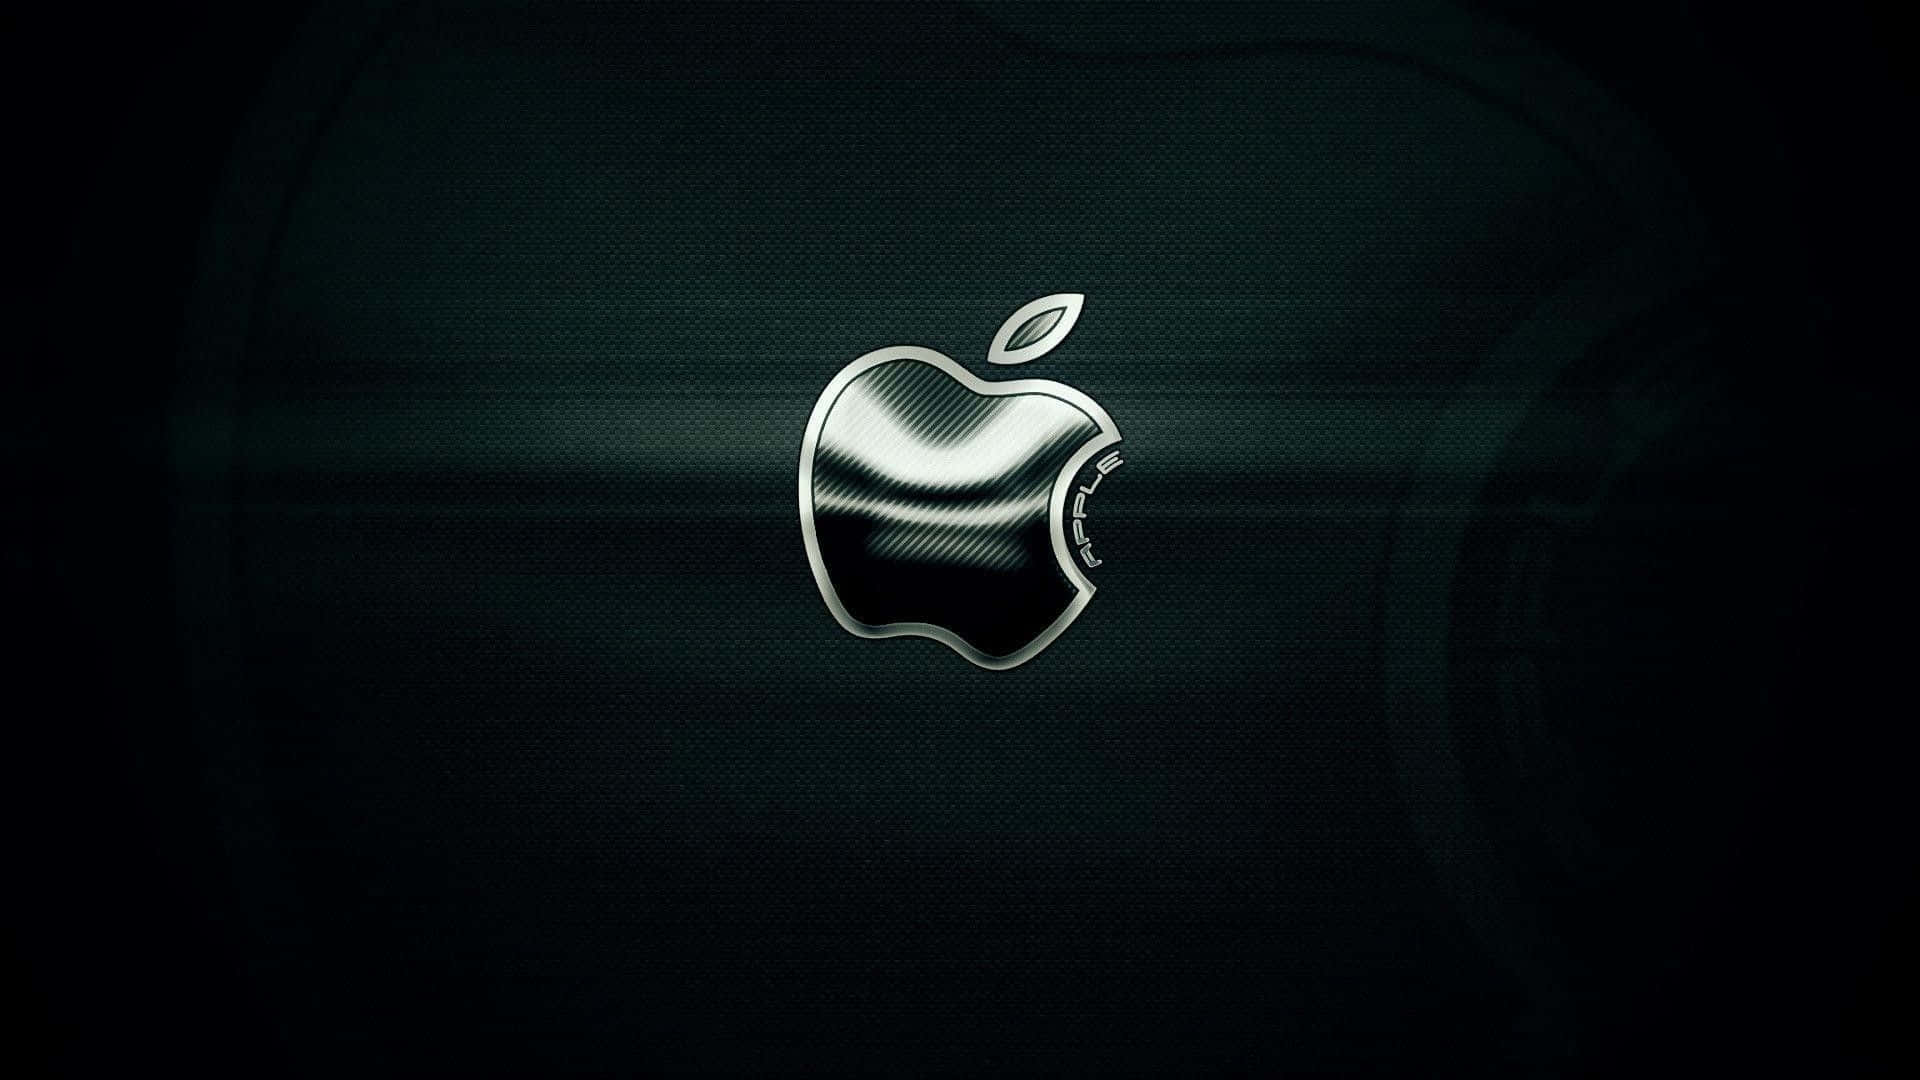 Laptopmit Metallischem Apple-logo Wallpaper